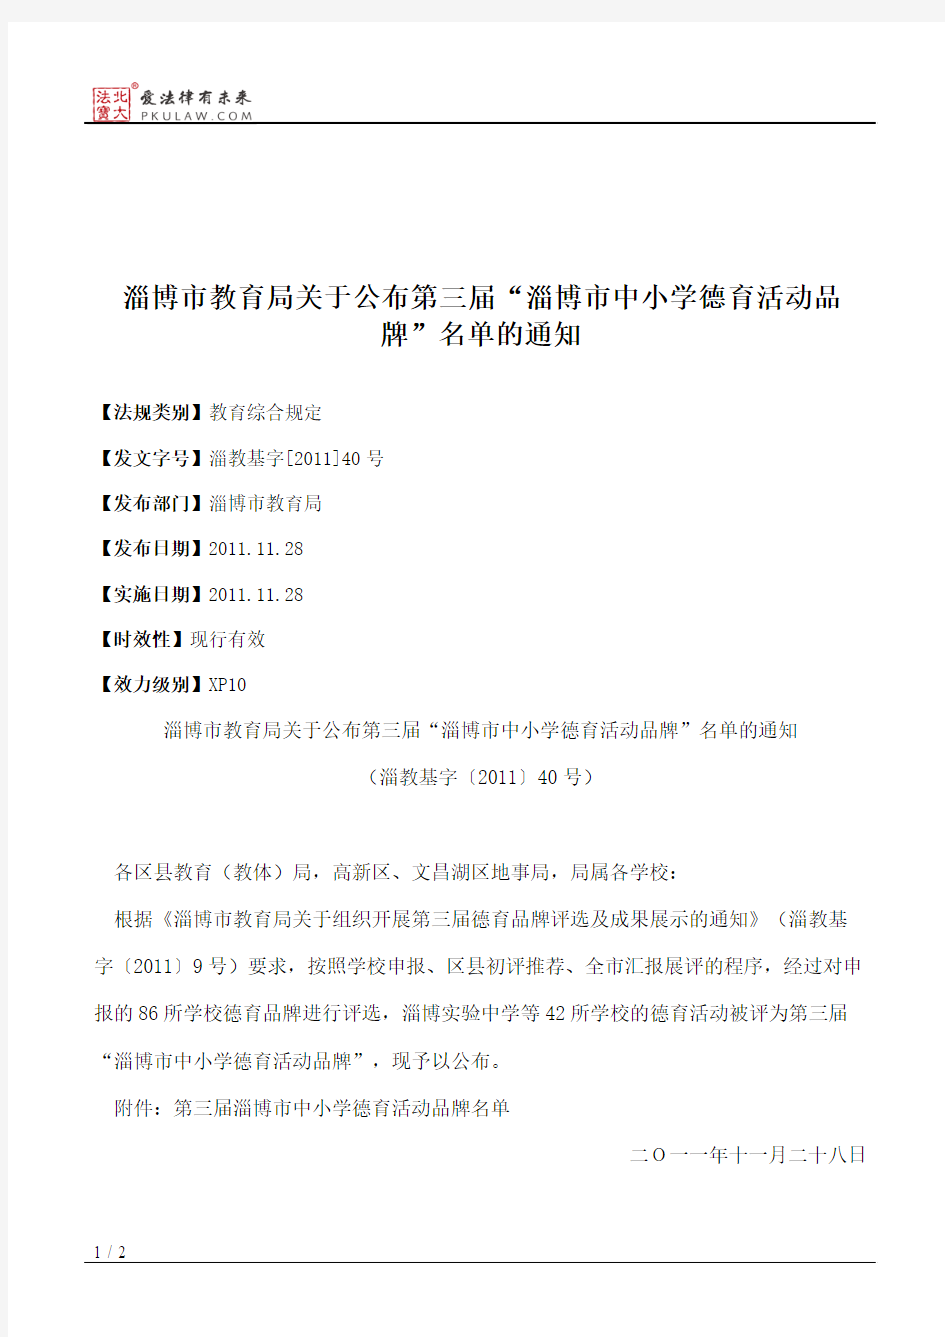 淄博市教育局关于公布第三届“淄博市中小学德育活动品牌”名单的通知